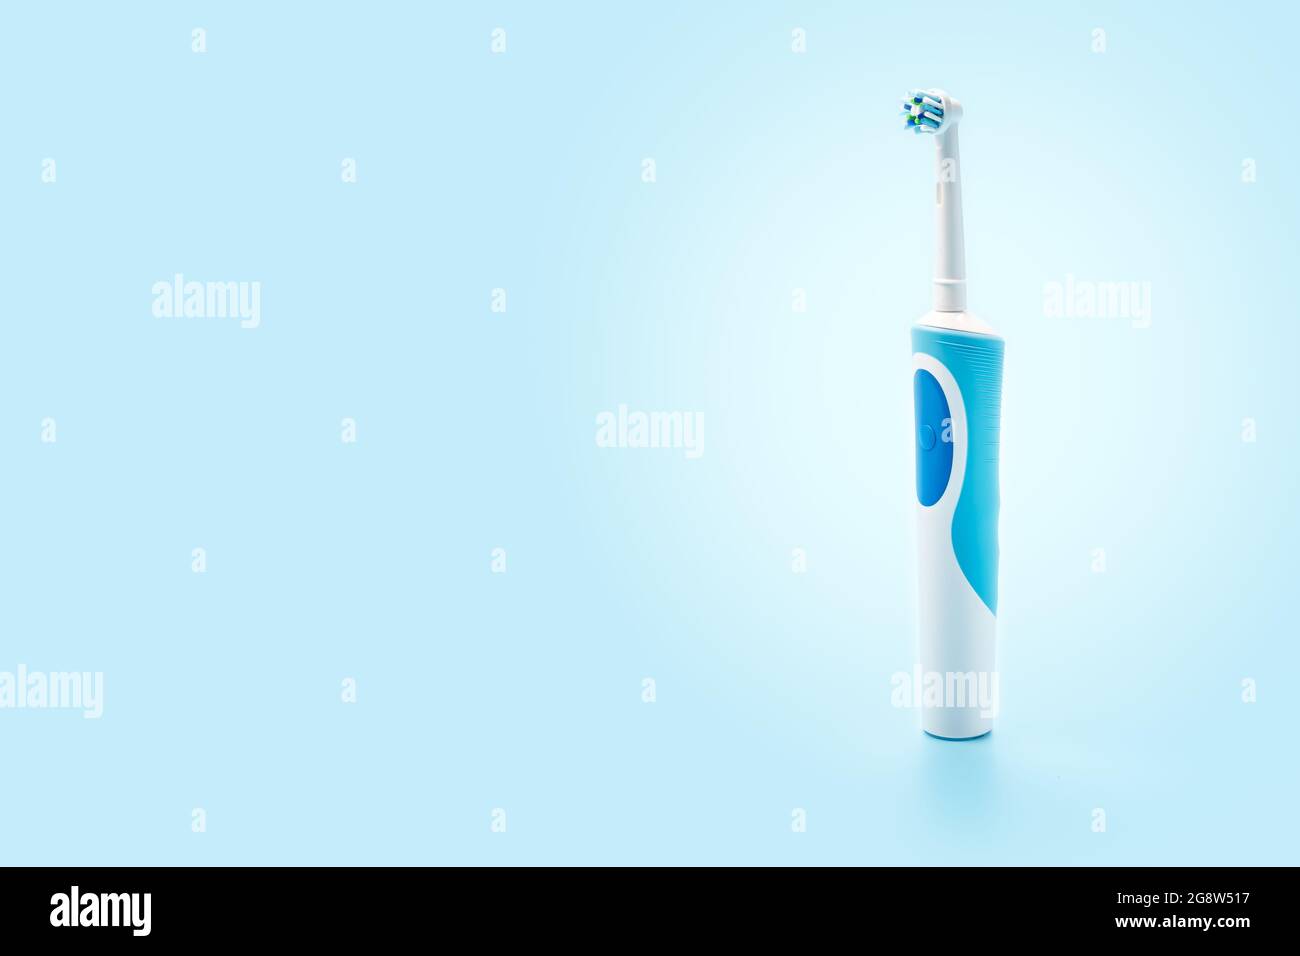 Lo spazzolino elettrico è verticale su sfondo blu. Strumenti di cura dentale su sfondo bianco. Concetto di buona igiene della bocca. Spazzolino elettrico, clos Foto Stock